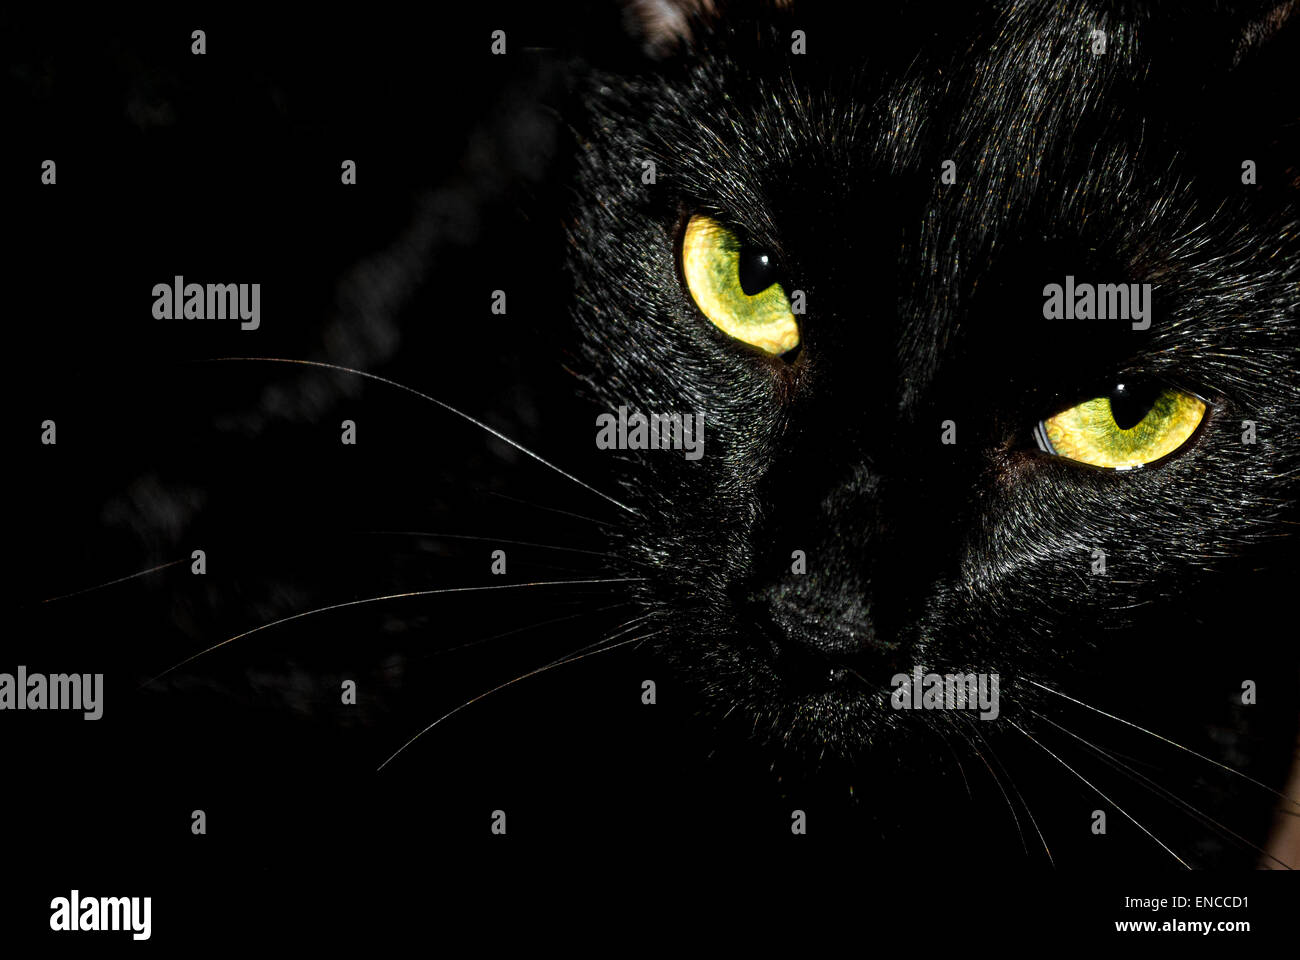 Black Cat/creepy face sinistre/portrait sur fond noir. Banque D'Images